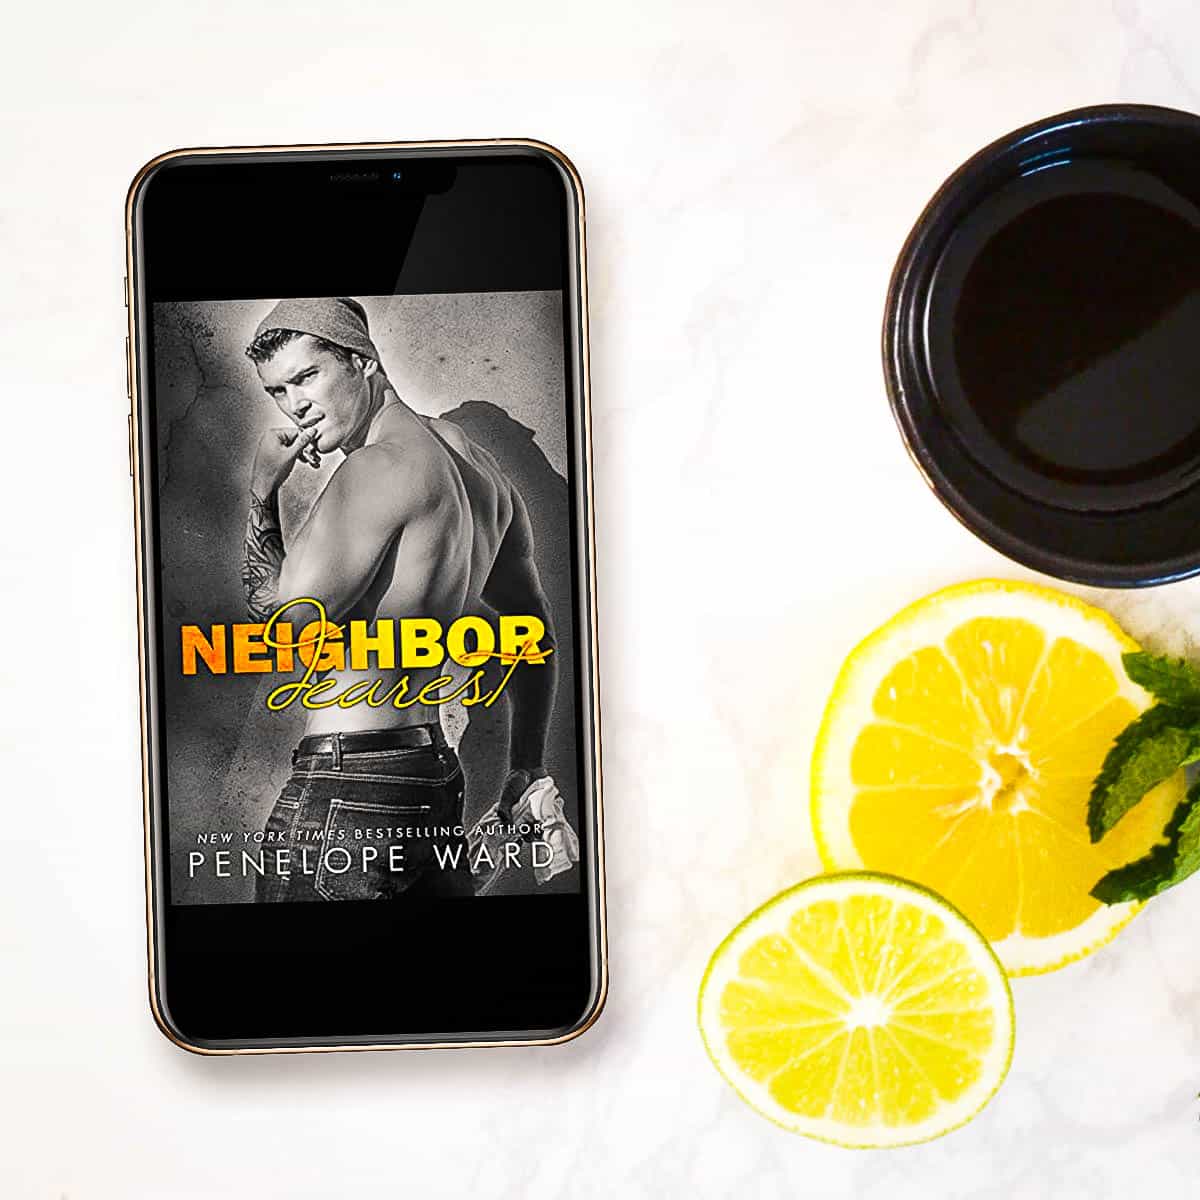 Neighbor Dearest by Penelope Ward – Review + Chapter 1